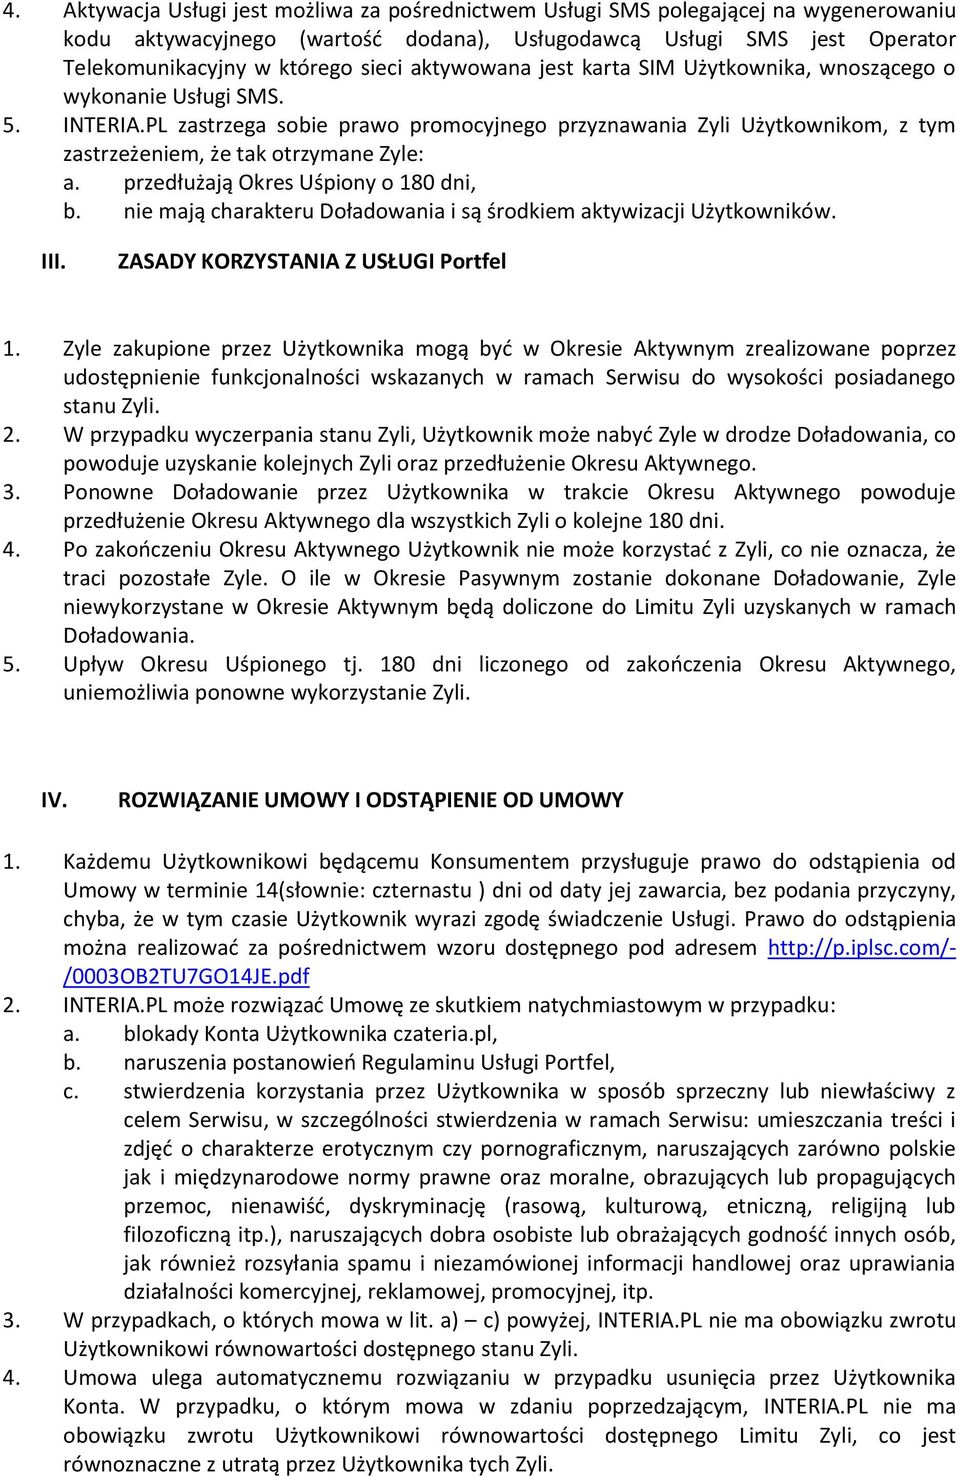 PL zastrzega sobie prawo promocyjnego przyznawania Zyli Użytkownikom, z tym zastrzeżeniem, że tak otrzymane Zyle: a. przedłużają Okres Uśpiony o 180 dni, b.